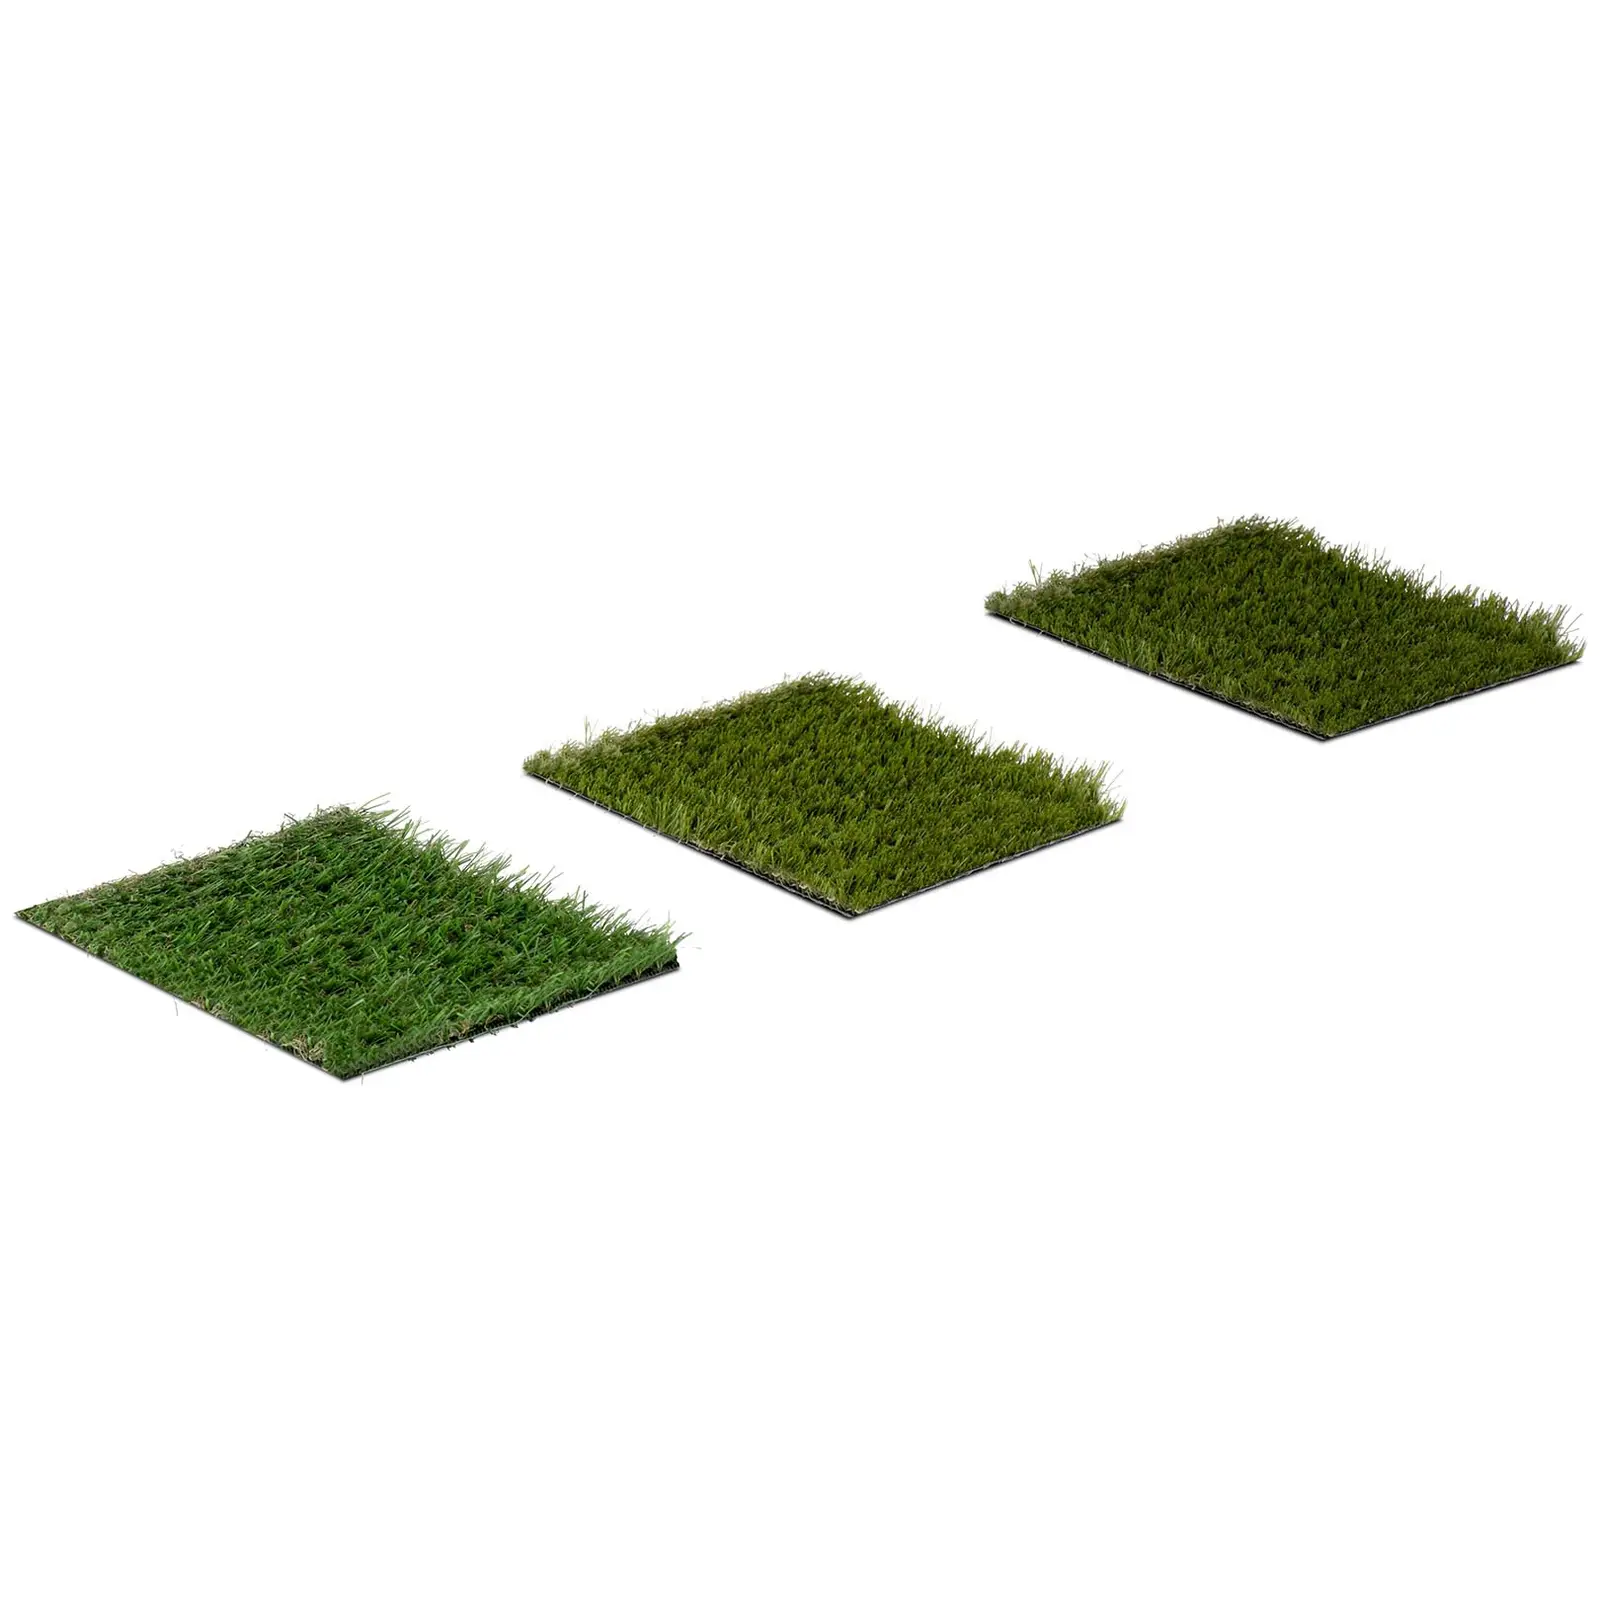 Konstgräs - 3 prover - vardera 20 x 17 cm - höjd: 20-30 mm - stickvidd: 20/10 13/10 14/10 cm - UV-beständig